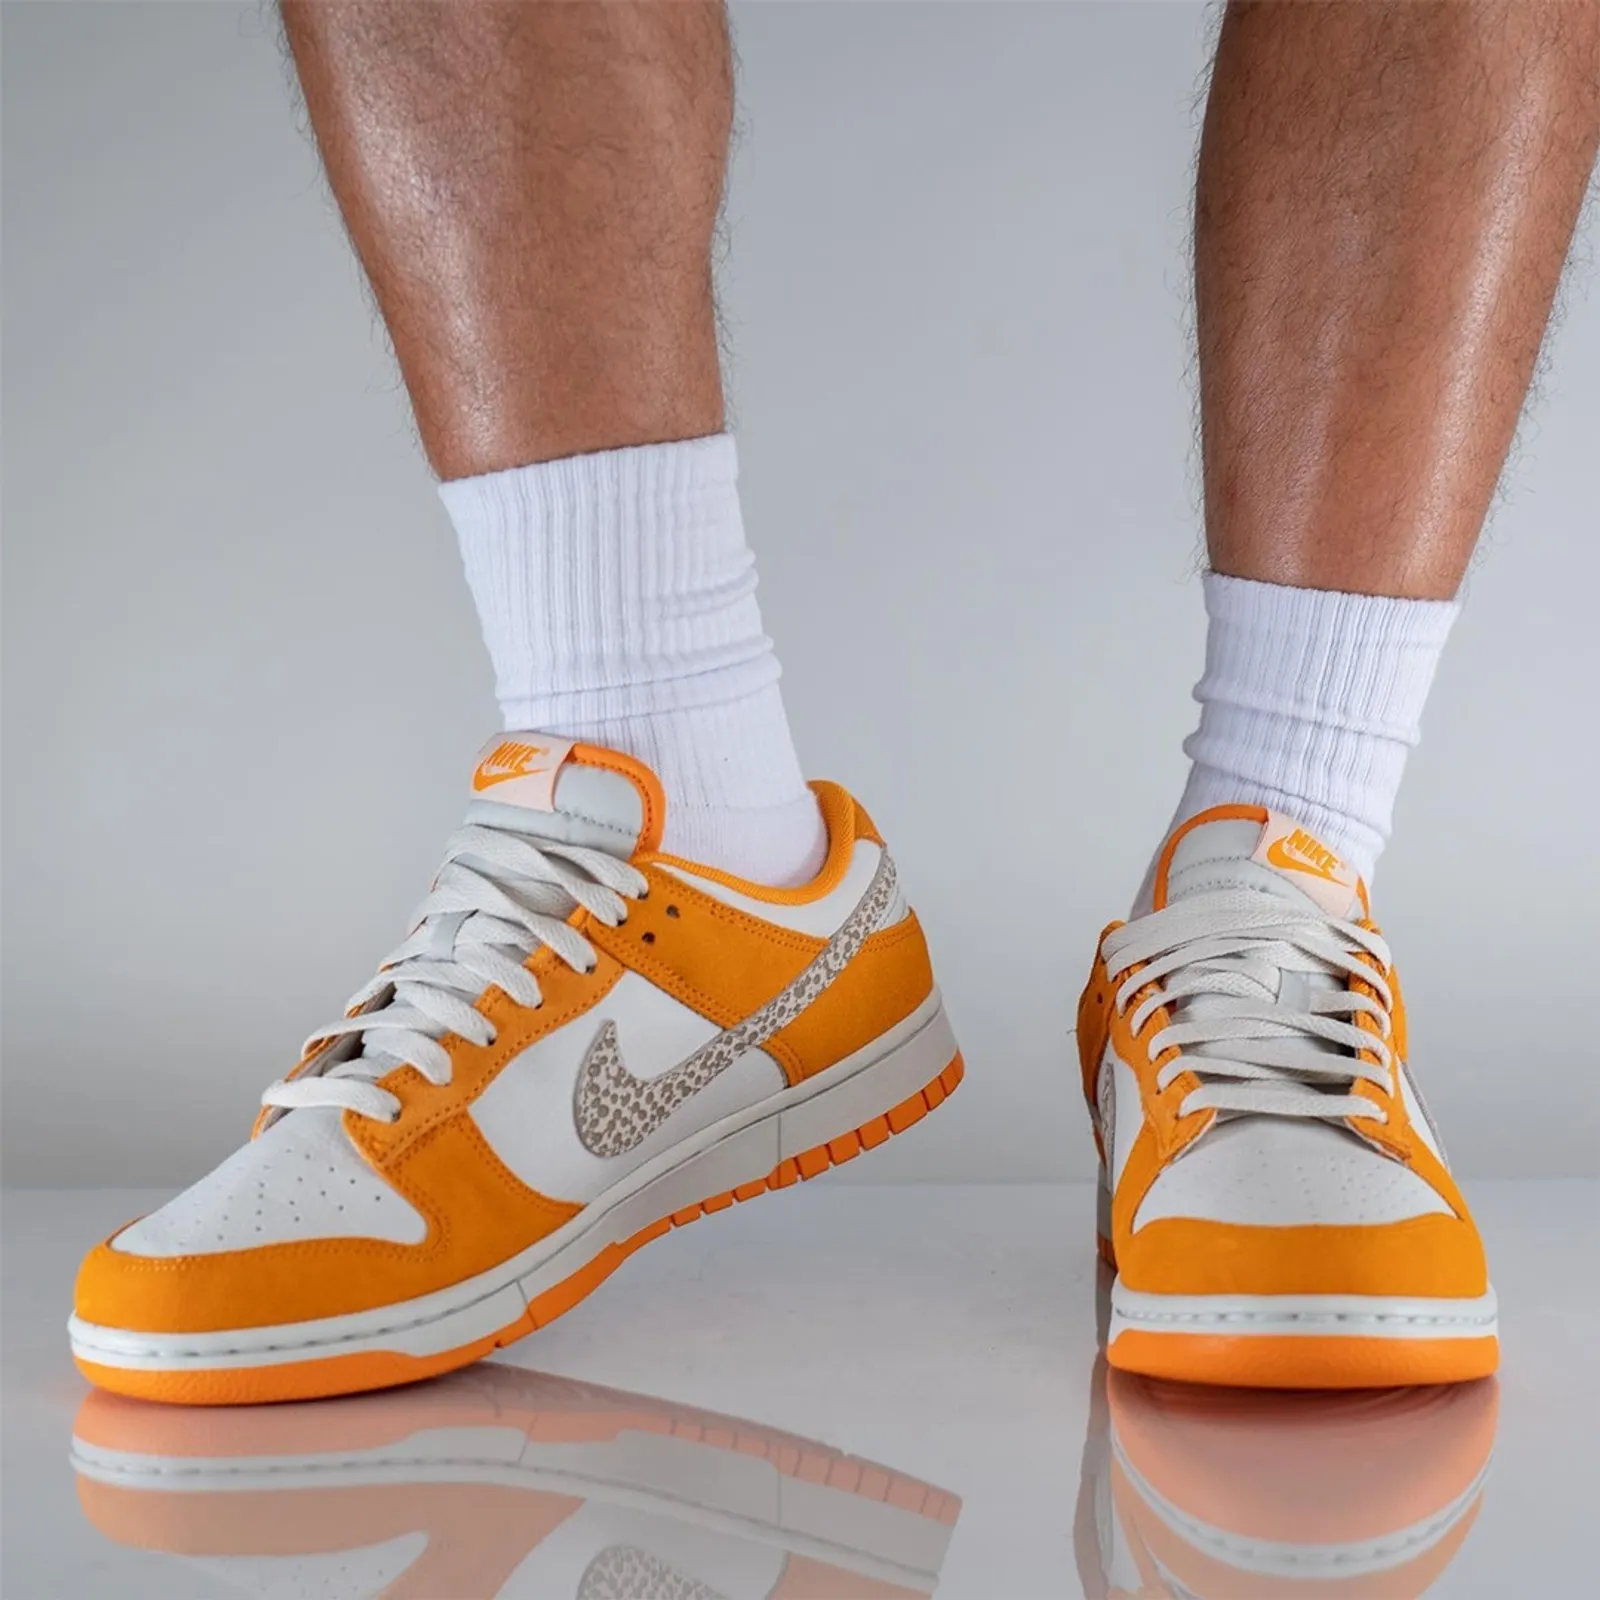 Unik! Begini Tampilan Nike Dunk Low dalam Warna 'Safari Swoosh'